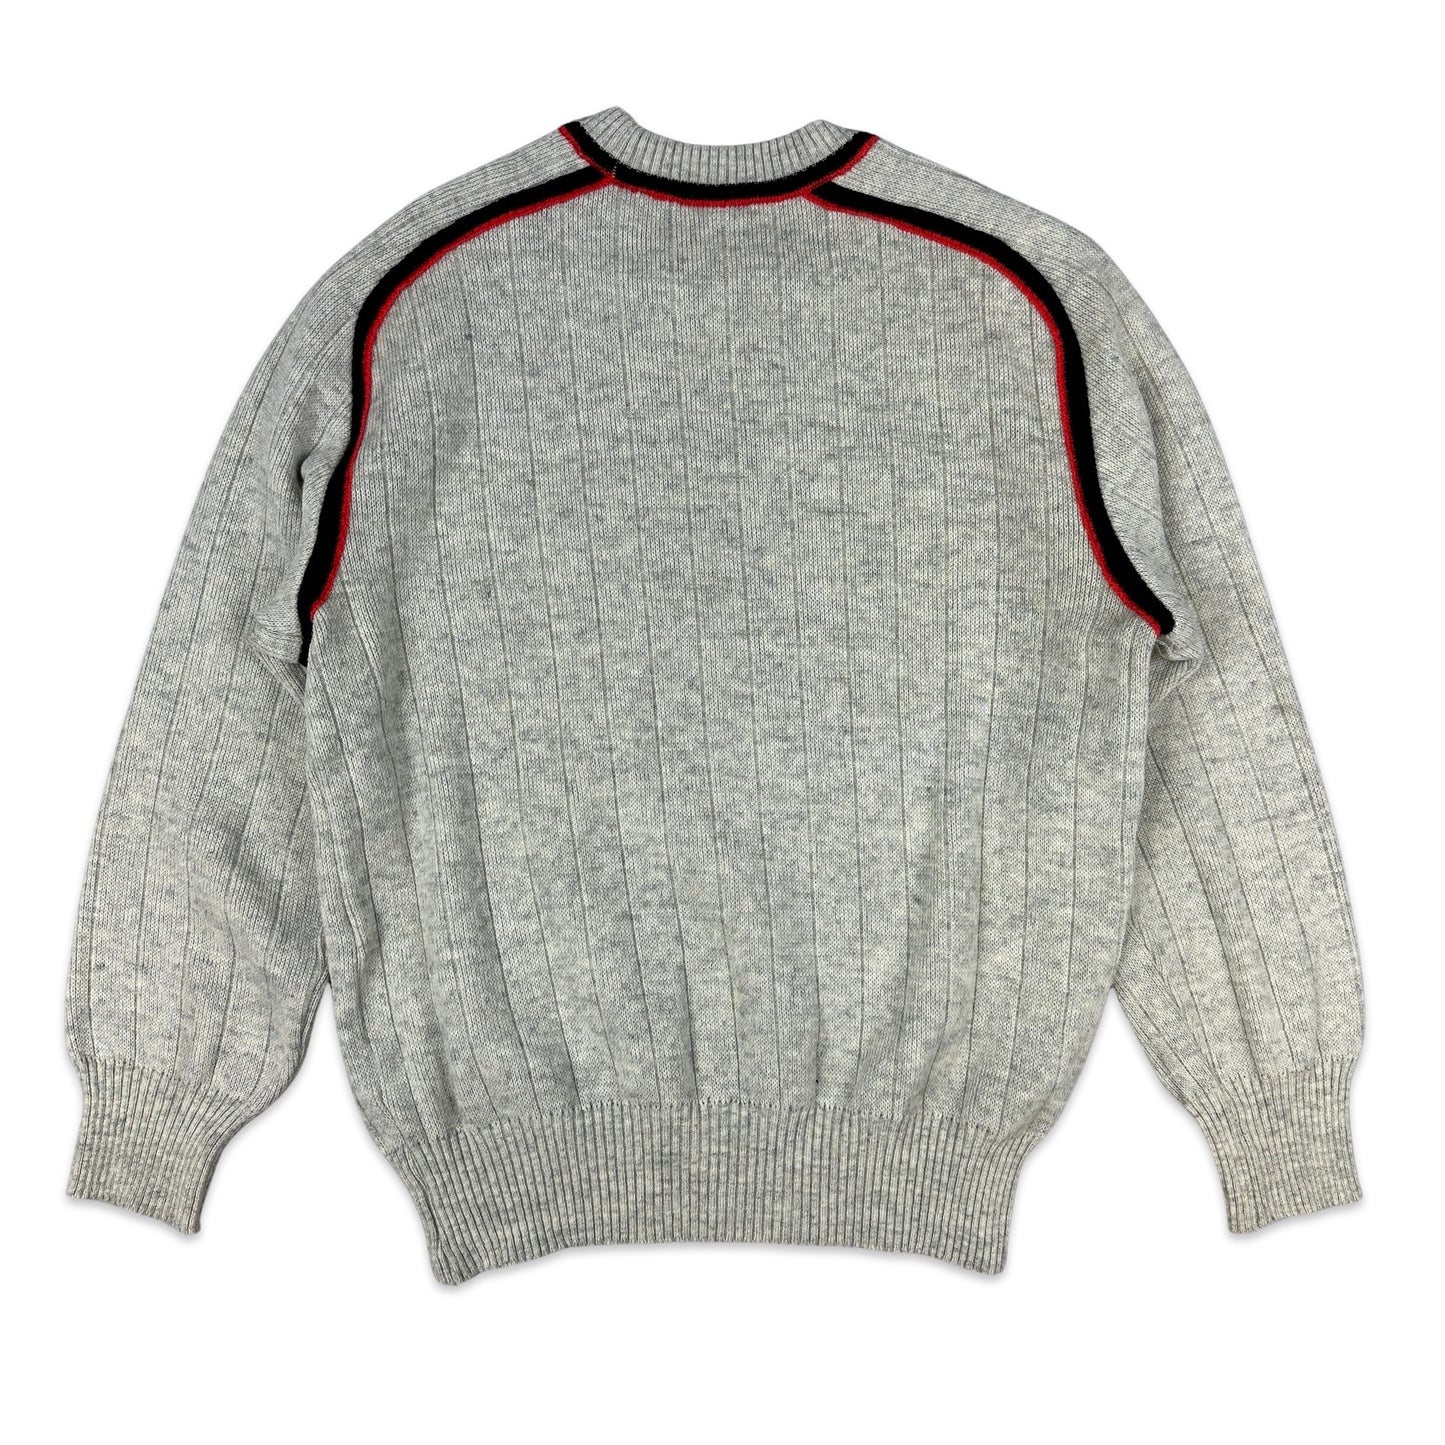 Vintage 80s Patterned Grey Wool Knit Jumper M